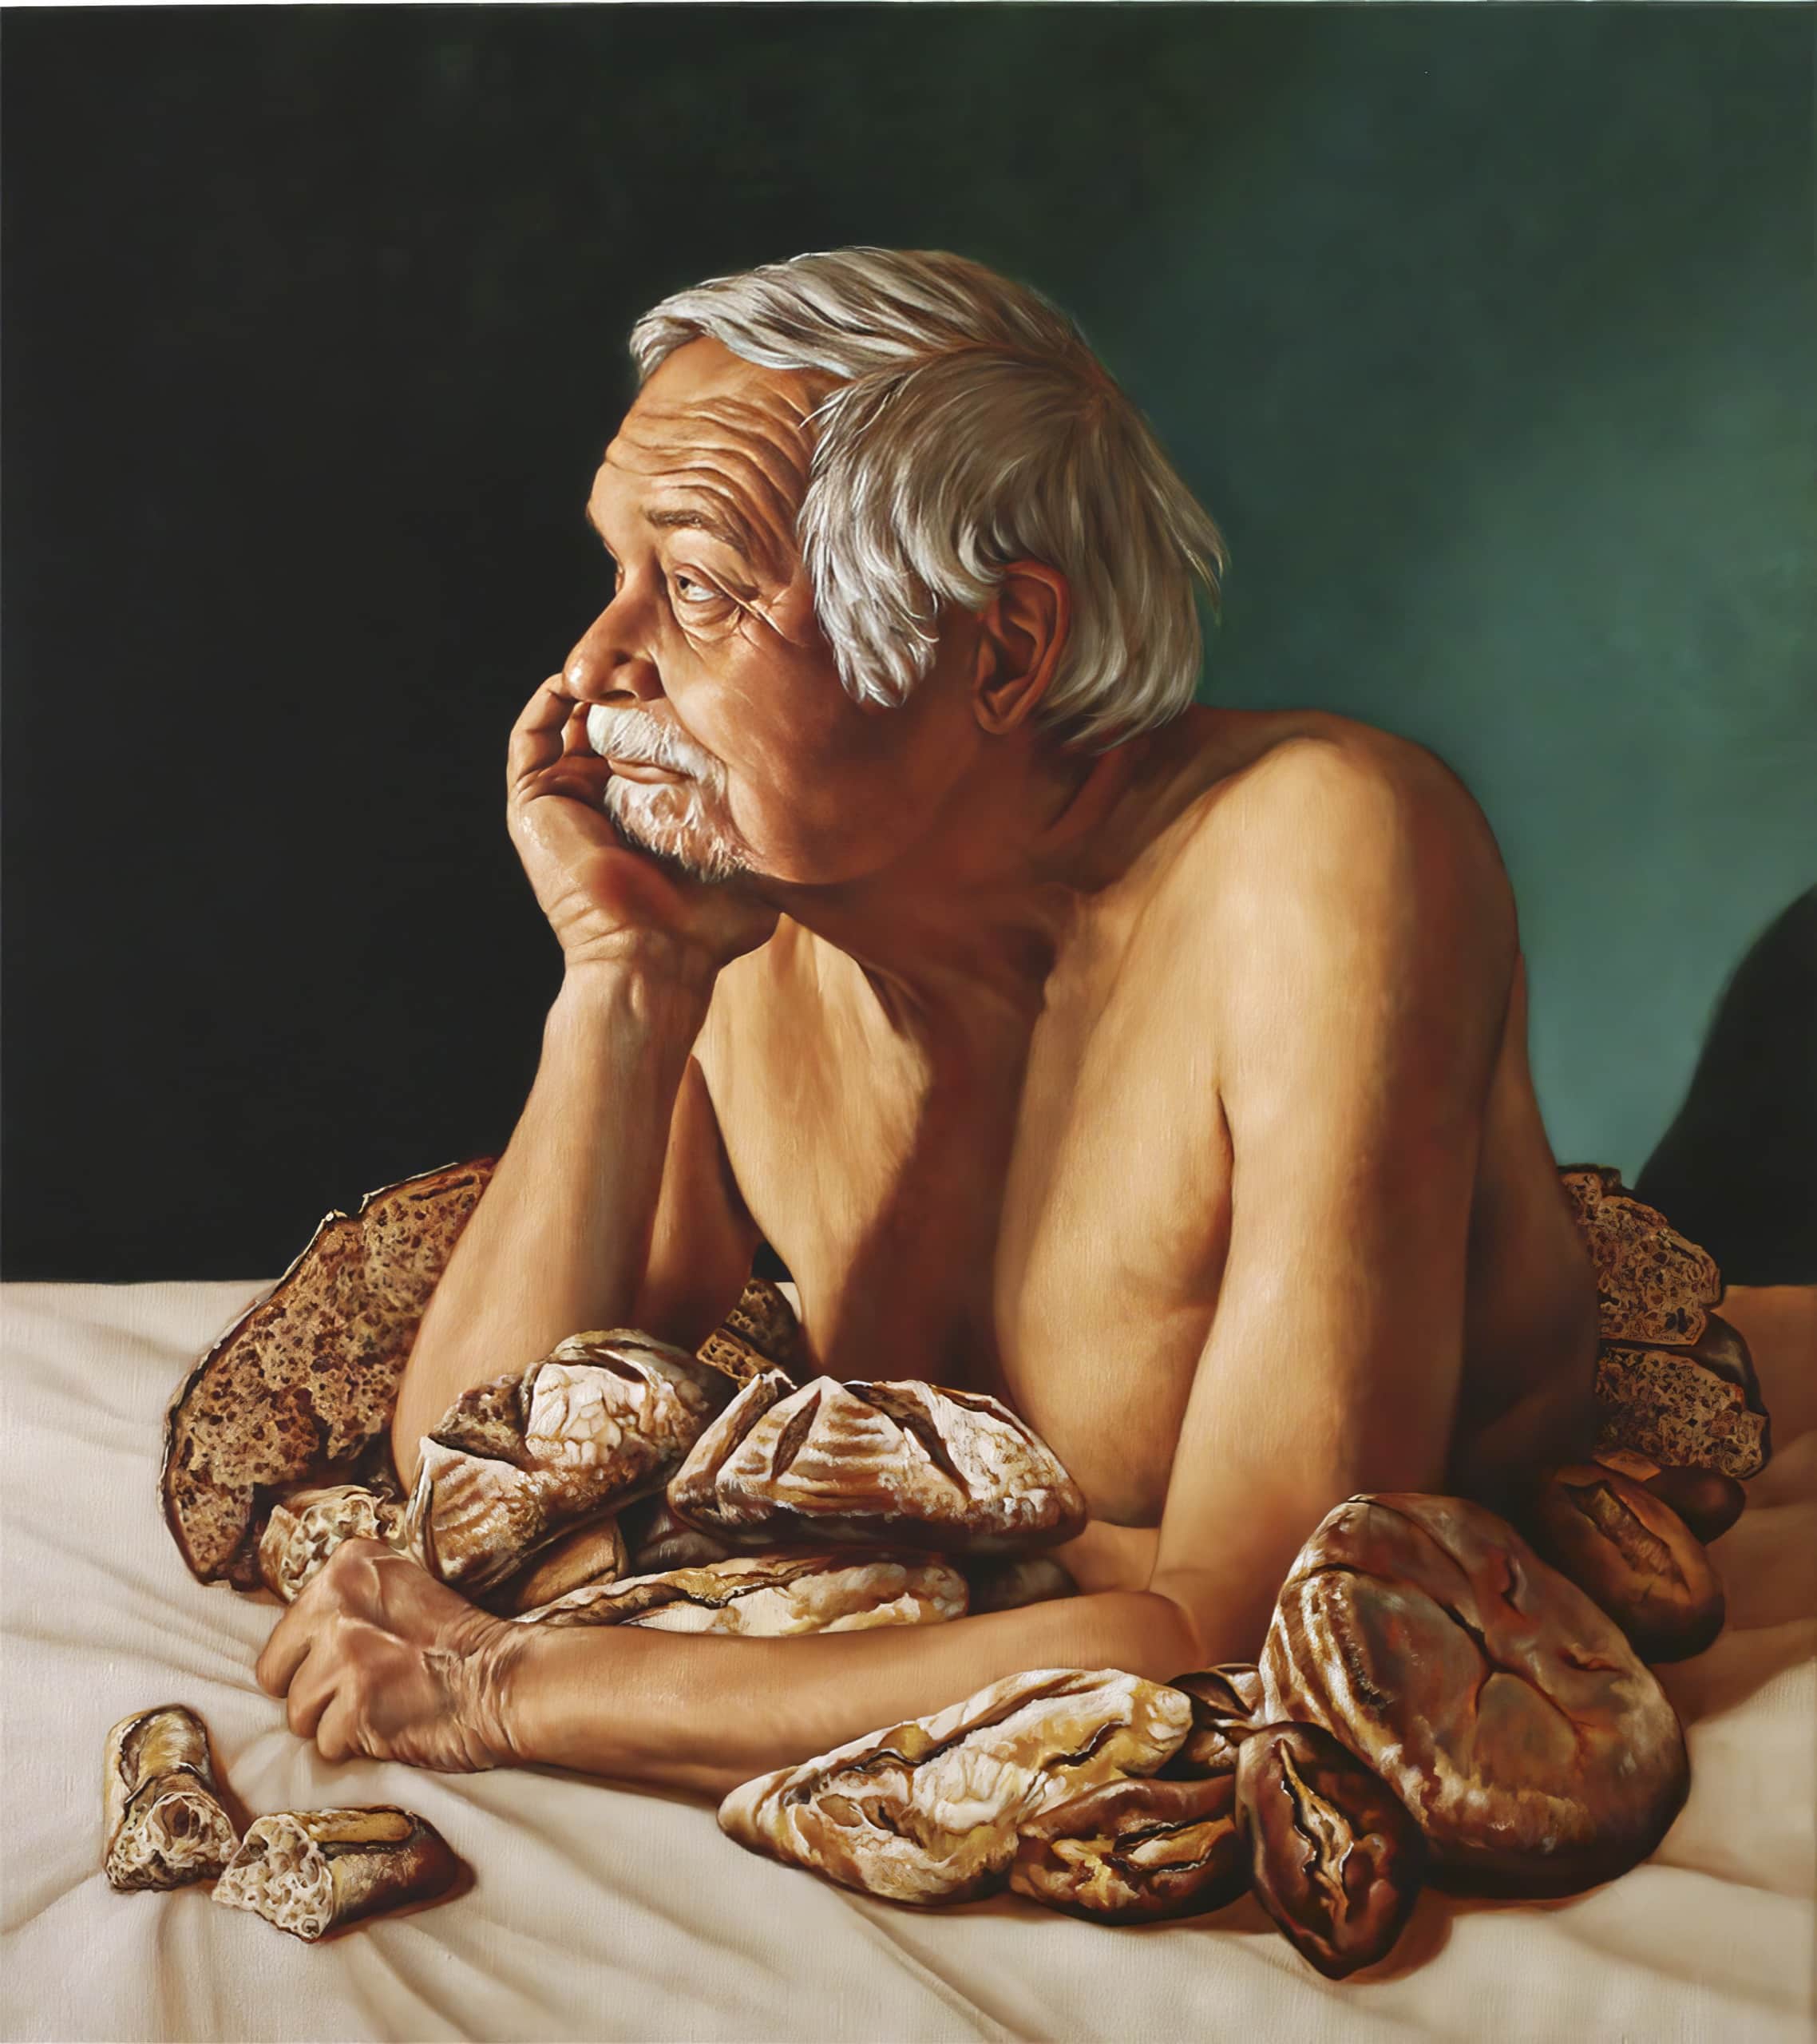 Trophee 3 - Didier, huile sur toile, 90x80 cm, 2020, collection privée